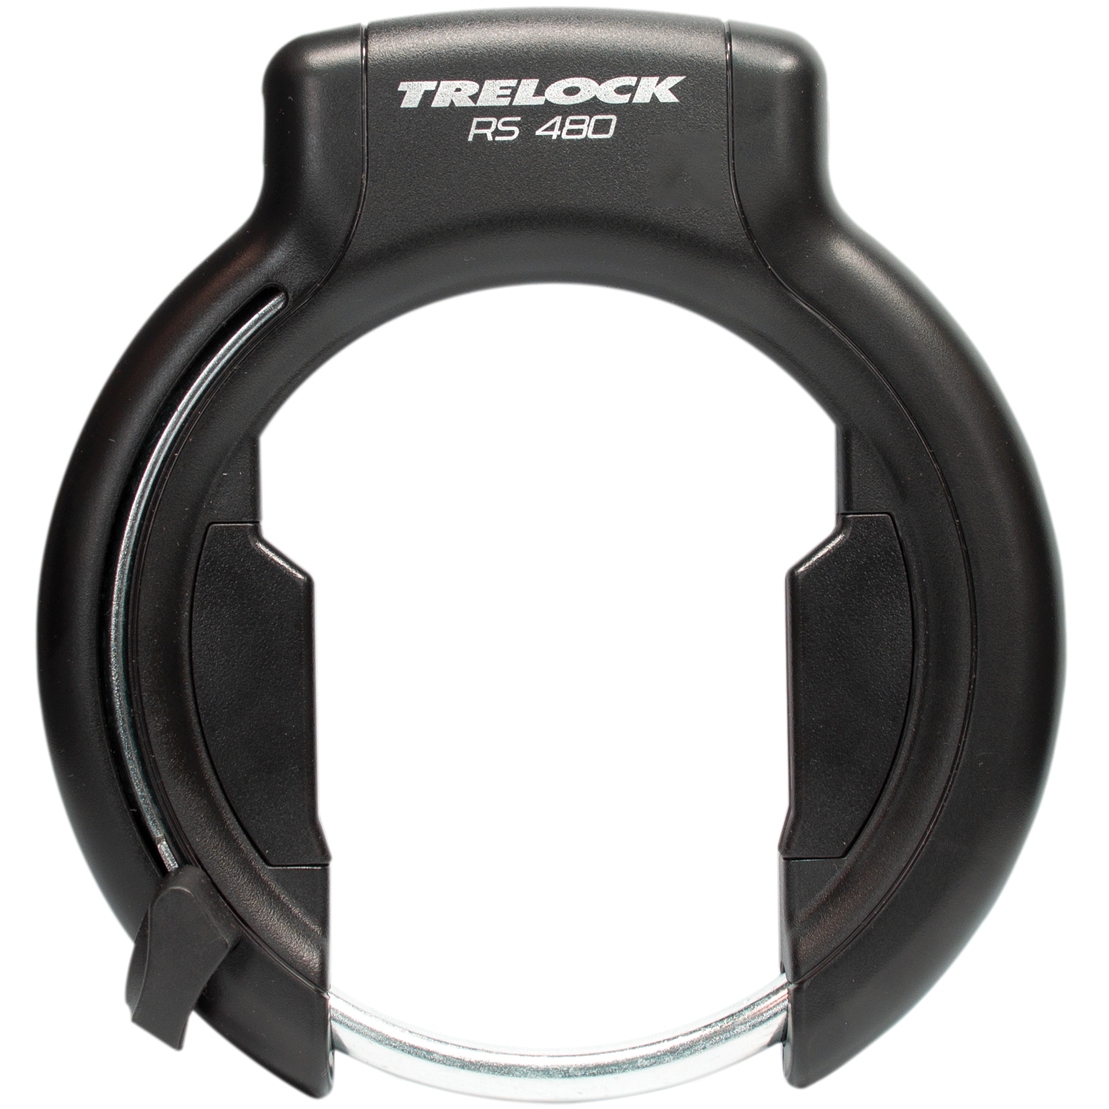 Bild von Trelock RS 480 P-O-C XL AZ Rahmenschloss